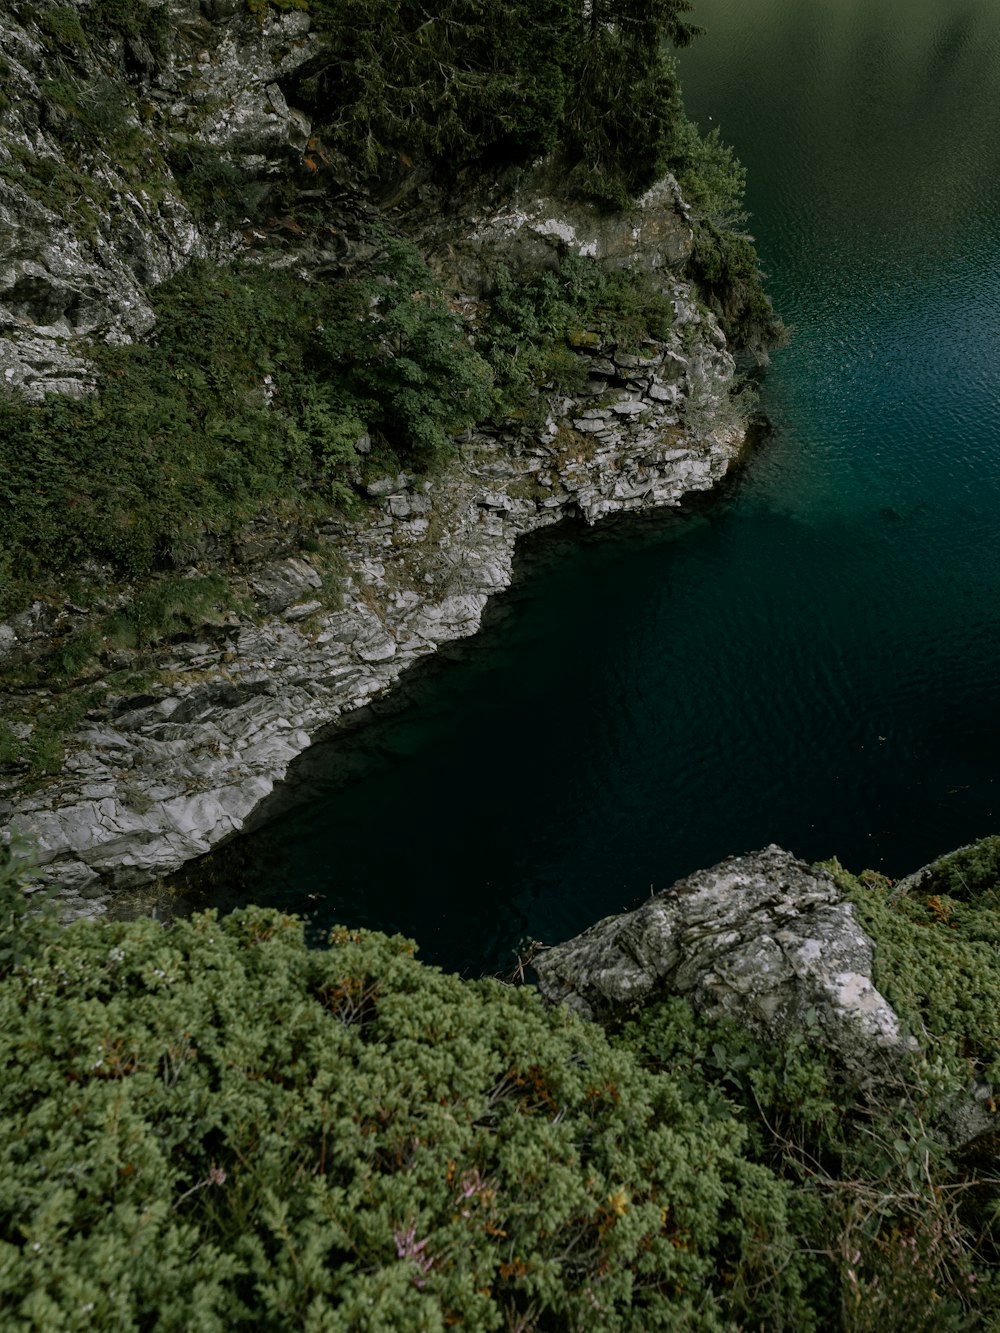 montagna rocciosa verde e grigia accanto allo specchio d'acqua blu durante il giorno